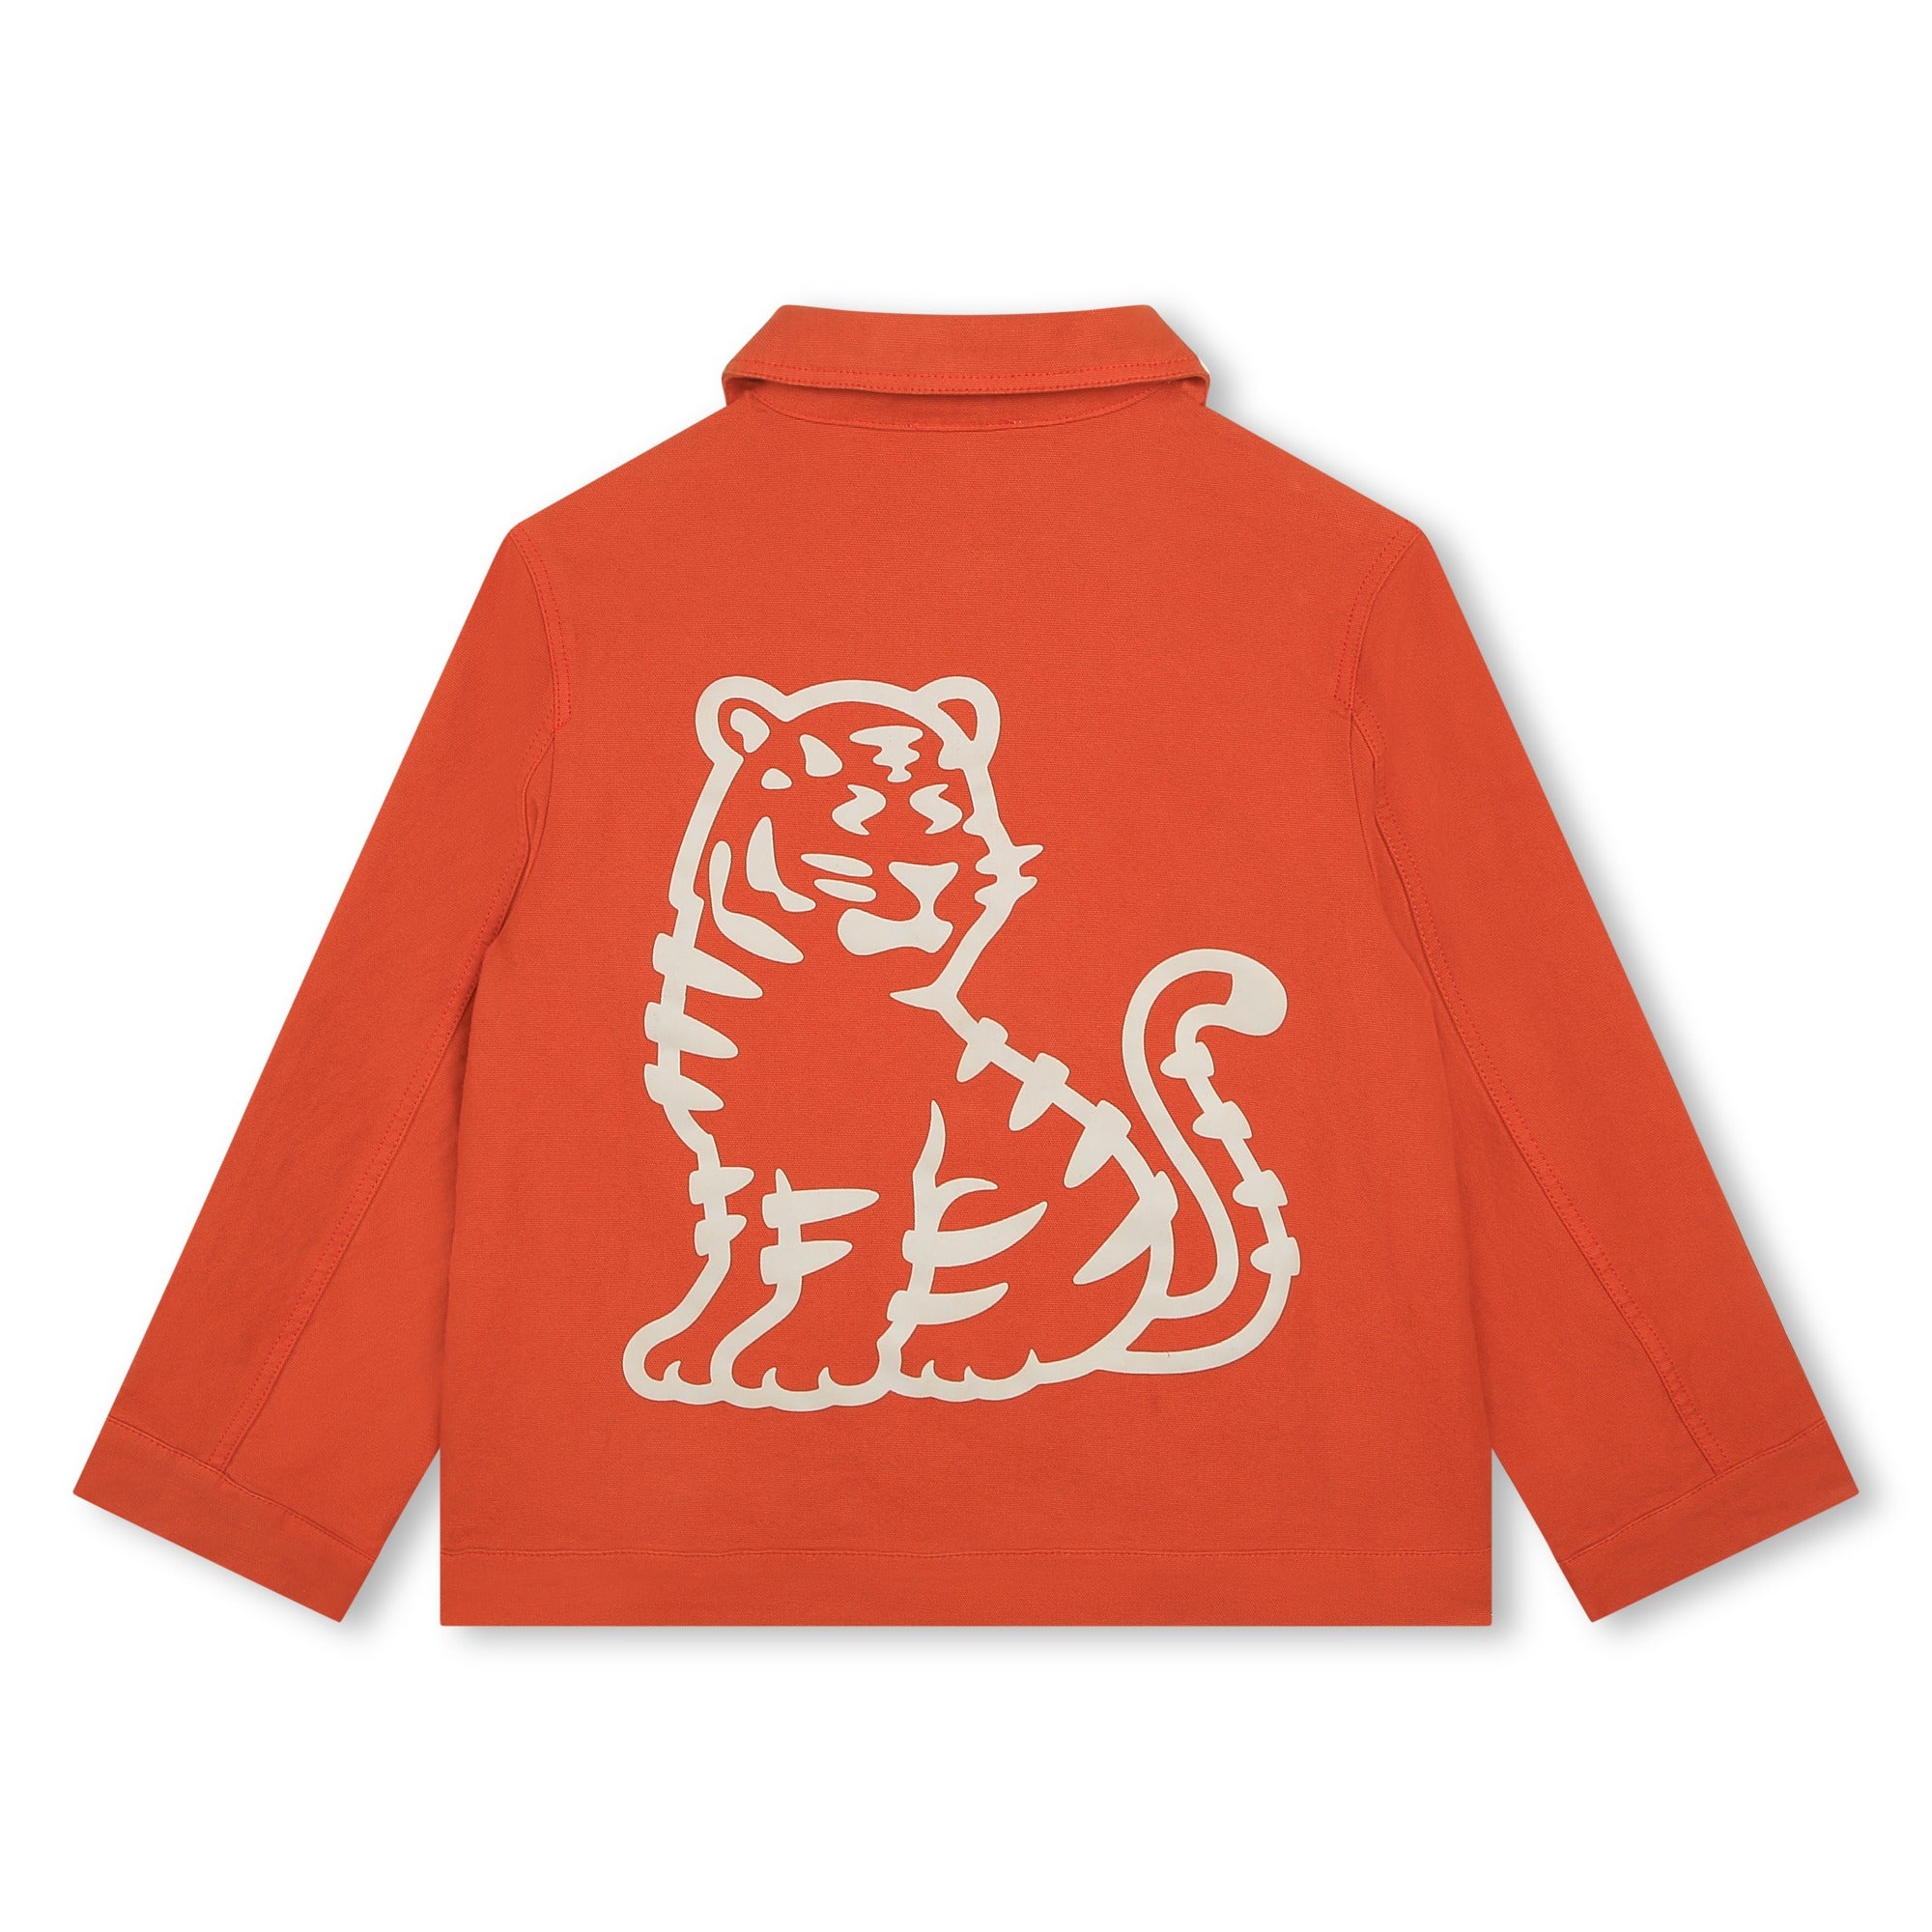 Boys & Girls Orange Red Printed Jacket